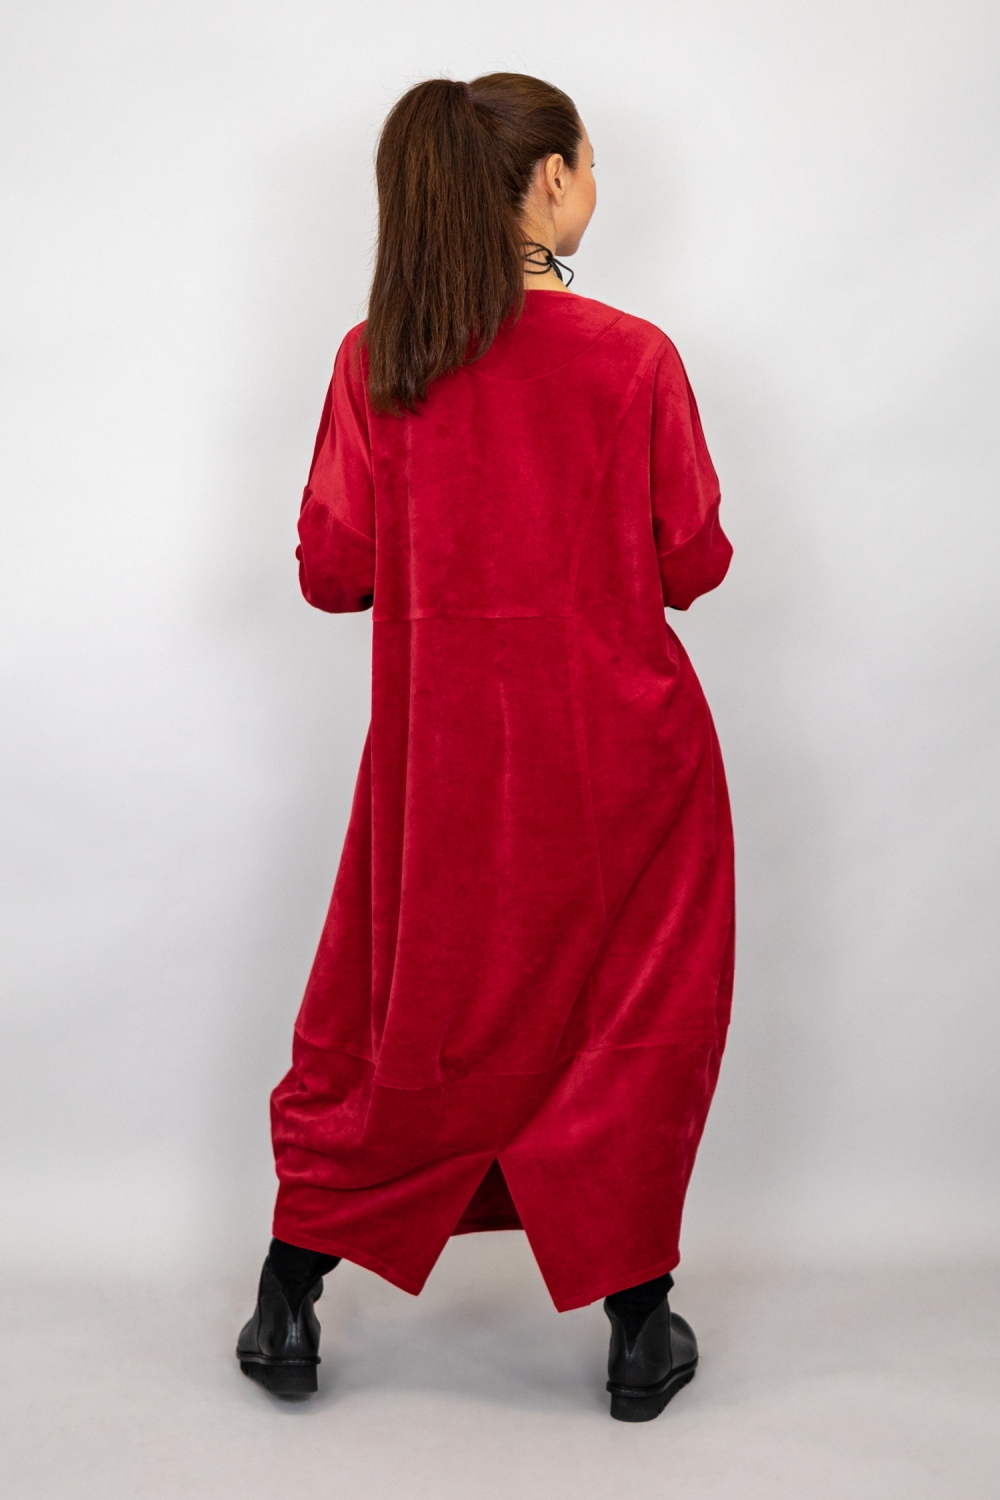 Laurer Kleid in Tulpenform aus Nicky Velours Stoff in rot